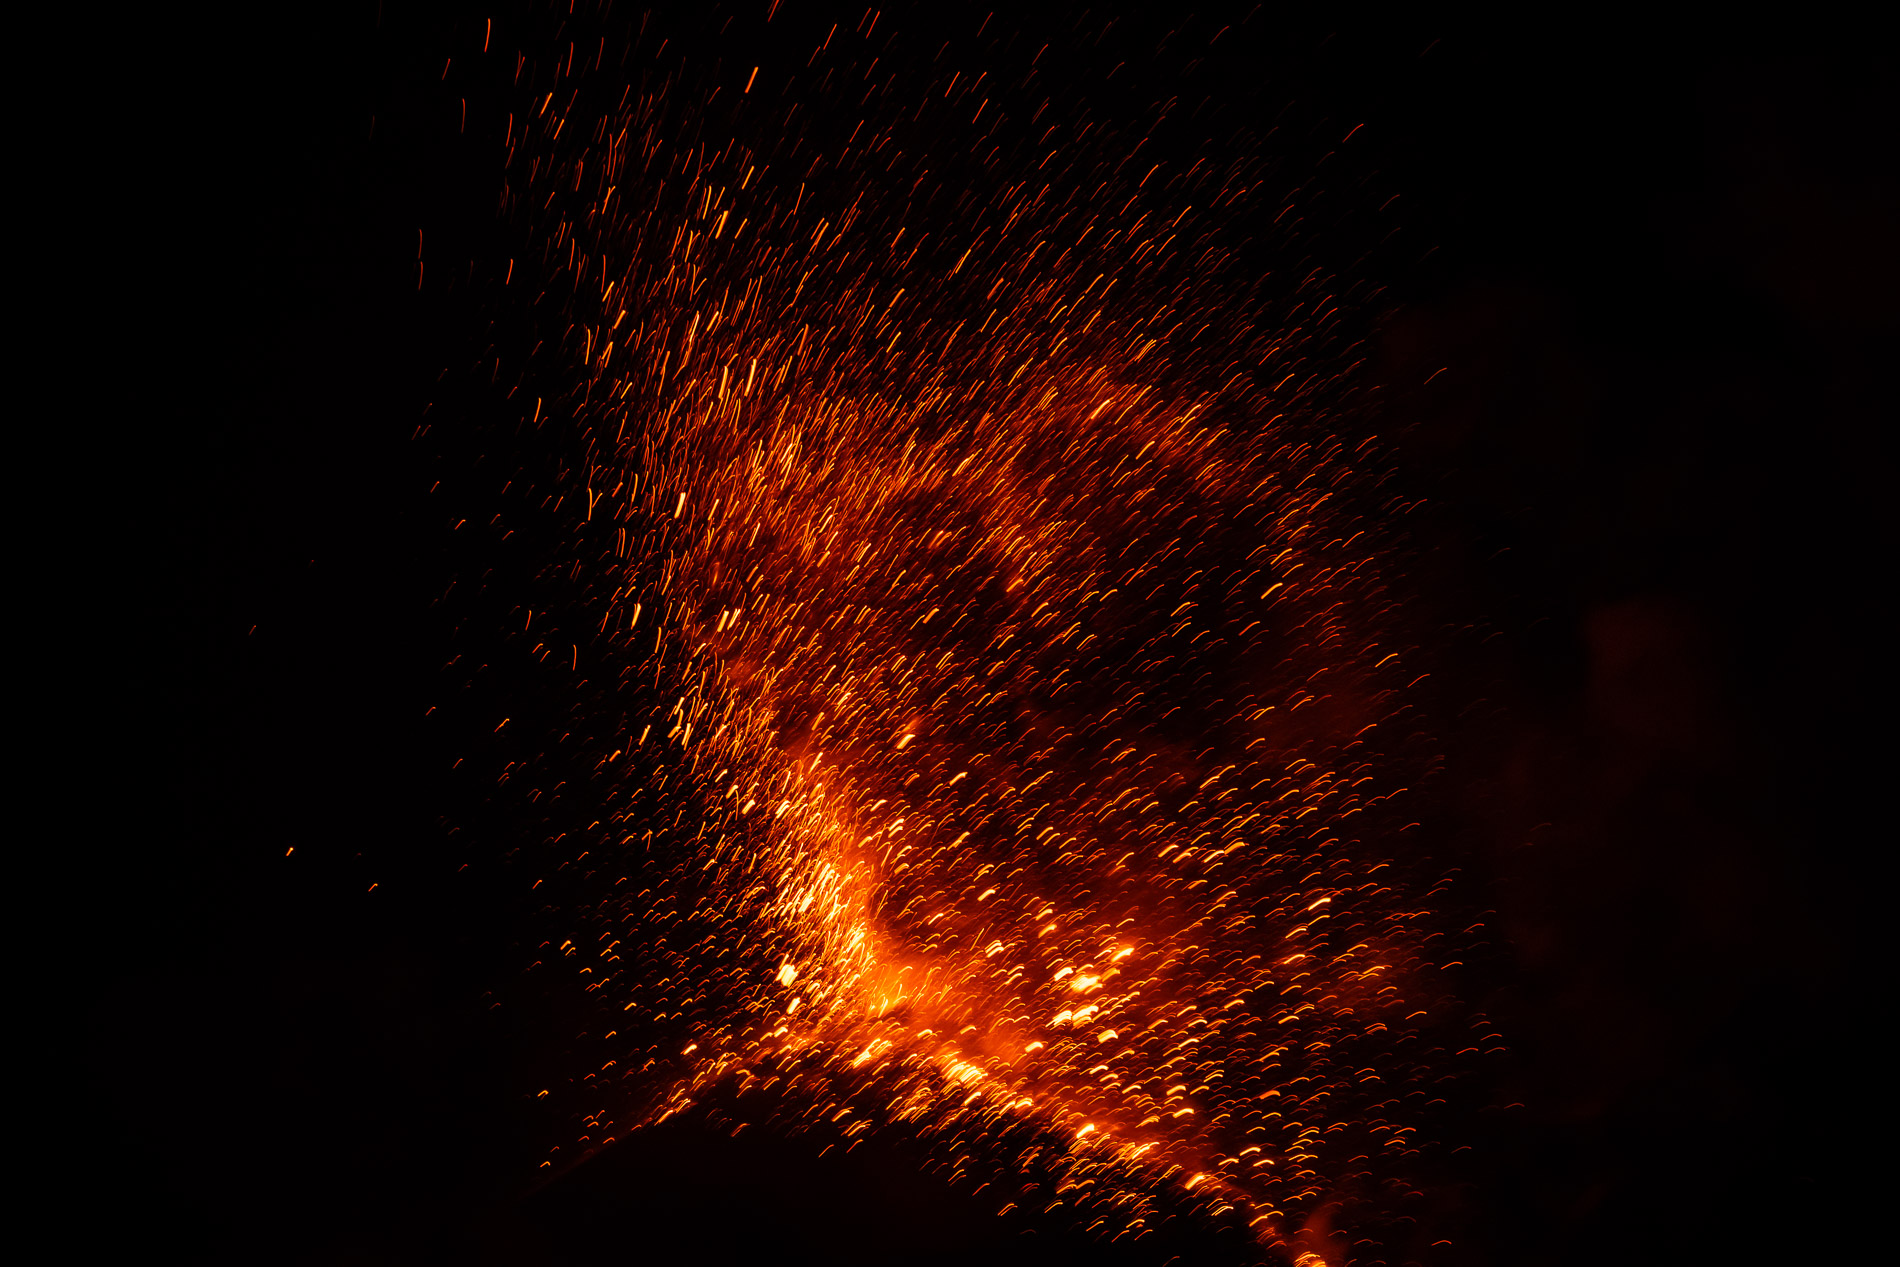 Le volcan Fuego culmine à 3 763 m. C’est l’un des volcans les plus actifs d’Amérique Centrale et également l’un des trois grands stratovolcans surplombant l’ancienne capitale du Guatemala, Antigua. Depuis 2002, le Fuego est à nouveau dans une phase active. À plusieurs reprises, ces éruptions ont entraîné d’importantes chutes de cendres, des coulées pyroclastiques, des coulées de lave et des lahars dommageables. Début juin 2018, une série d’explosions et de coulées pyroclastiques accompagnées de l’effondrement d’une partie du flanc du volcan ont provoqué plusieurs centaines de morts. L’activité éruptive consiste le plus souvent en des explosions avec des émissions de cendres, des avalanches de blocs et des coulées de lave. 
The Fuego volcano culminates at 3,763 m. It is one of the most active volcanoes in Central America and also one of three large stratovolcanoes overlooking the former capital of Guatemala, Antigua. Since 2002, the Fuego is again in an active phase. On several occasions, these eruptions have resulted in significant ashfall, pyroclastic flows, lava flows and damaging lahars. In early June 2018, a series of explosions and pyroclastic flows accompanied by the collapse of part of the side of the volcano caused several hundred deaths. Eruptive activity most often consists of explosions with ash emissions, boulder avalanches and lava flows.